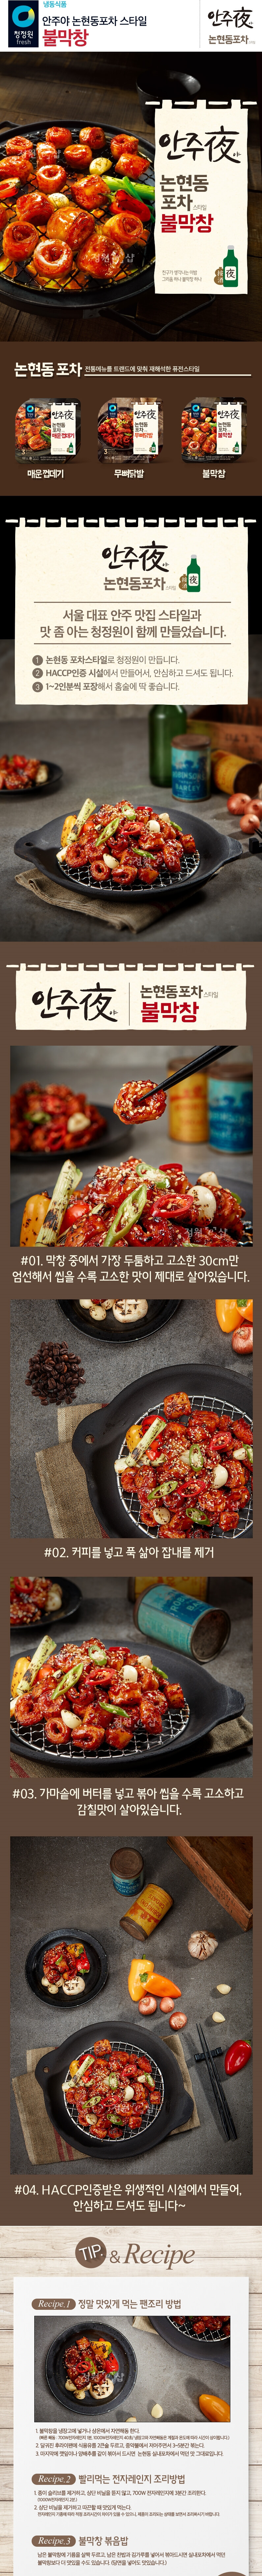 韓國食品-[청정원] 안주야 불막창 160g